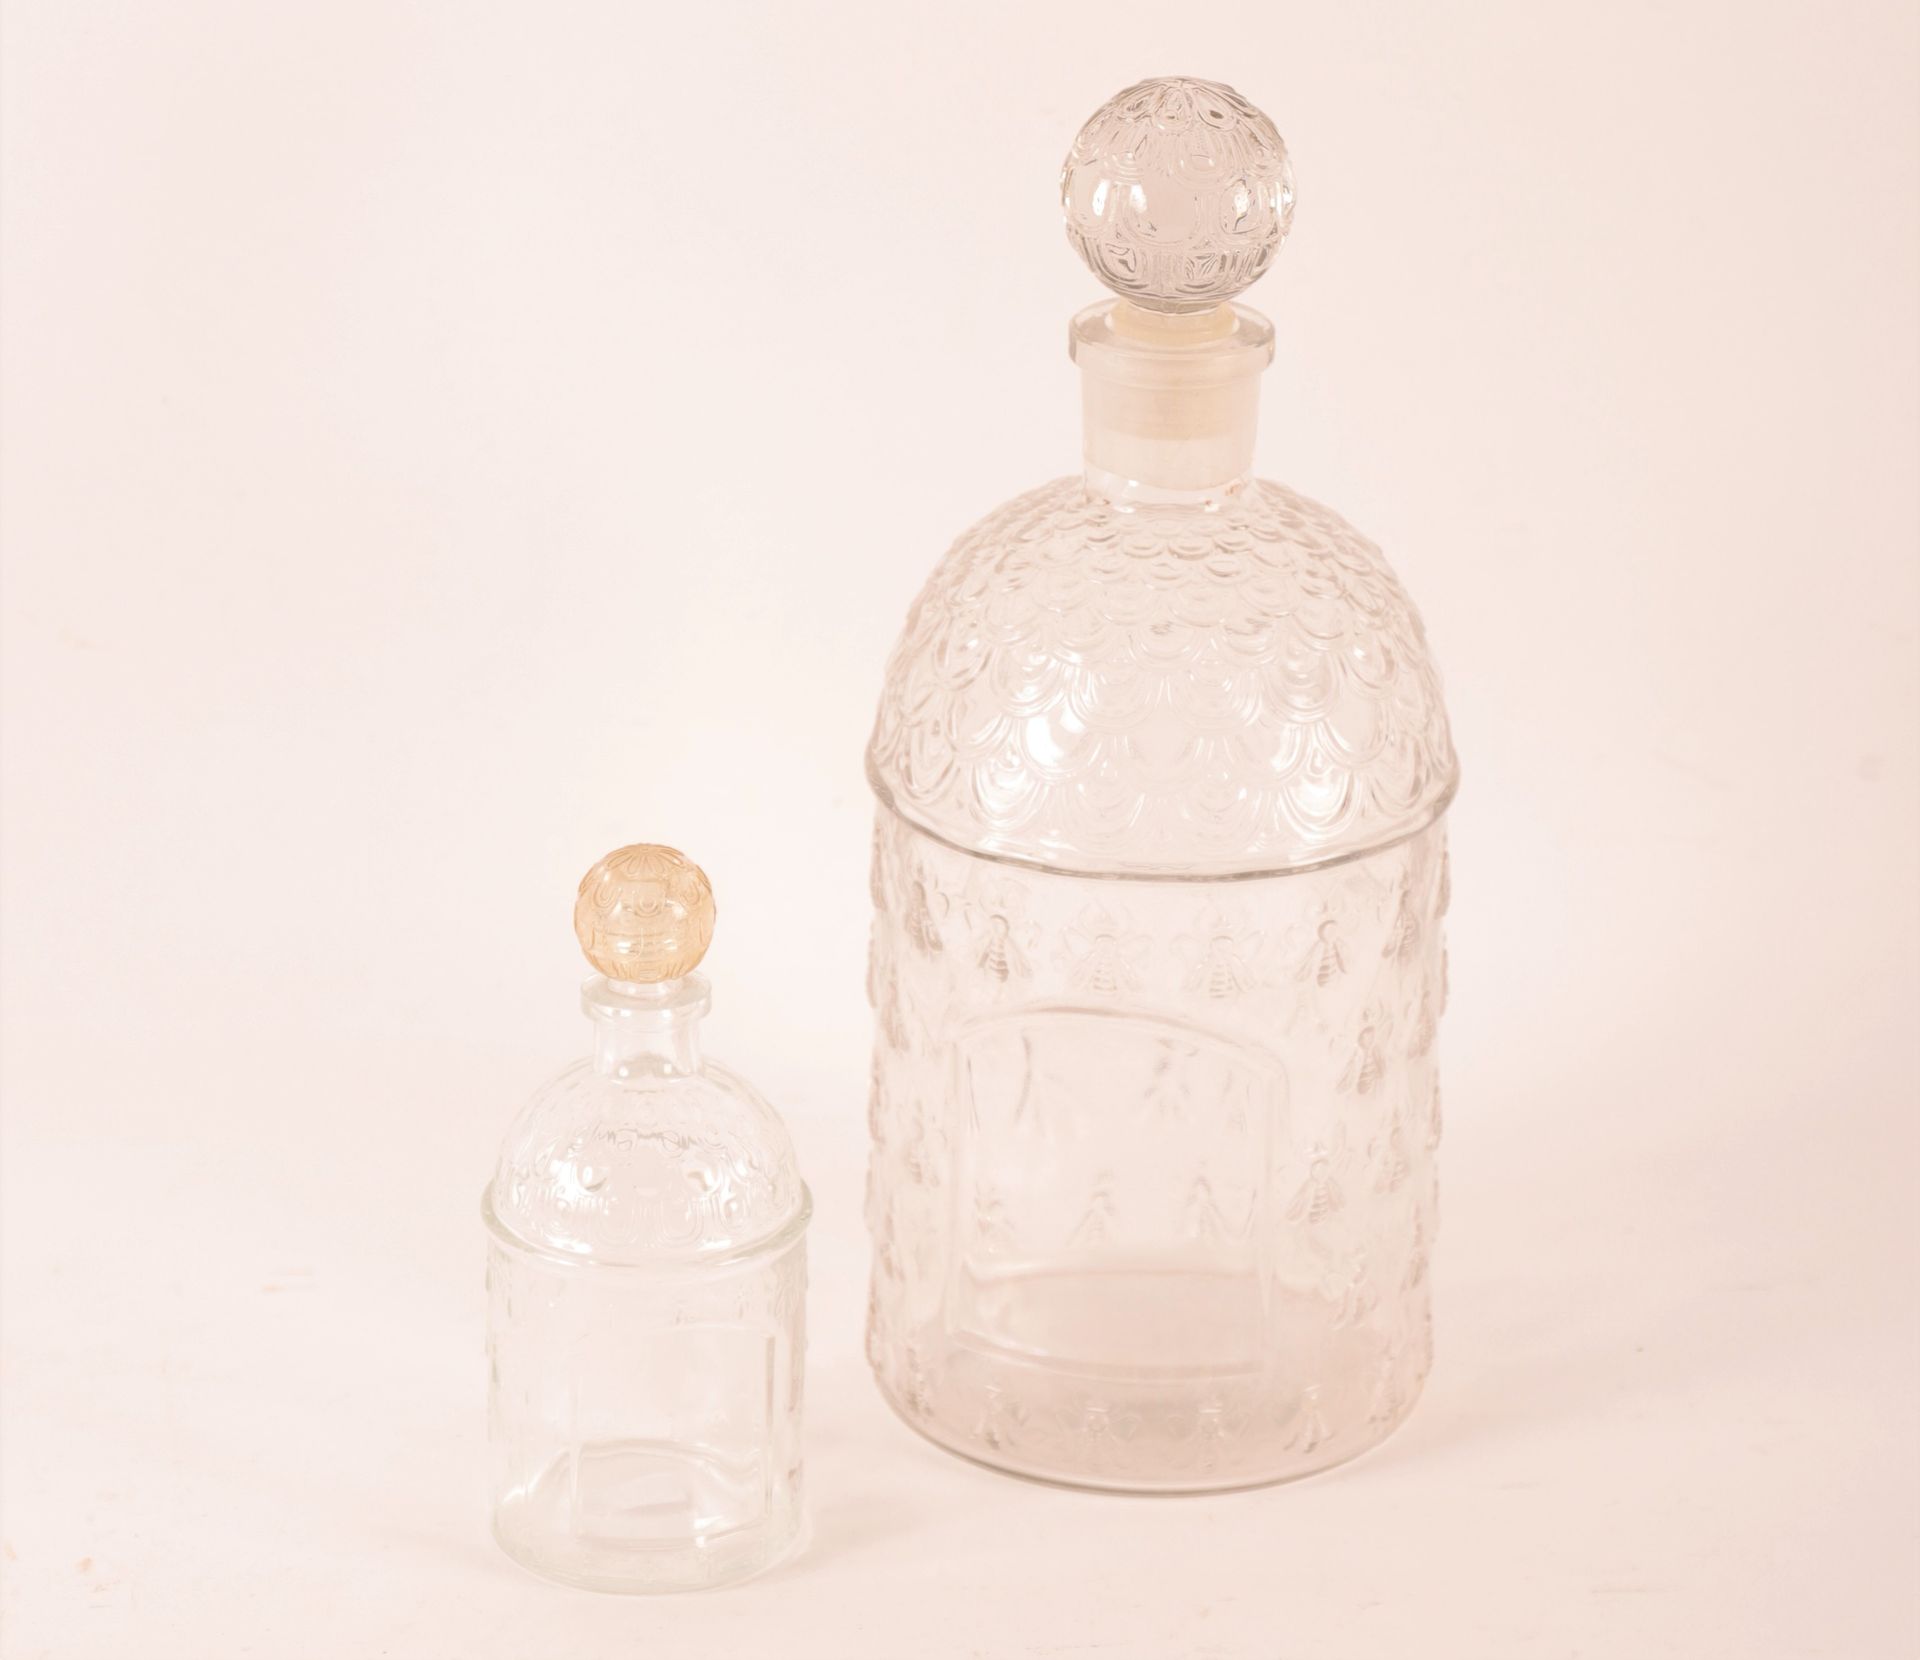 Guerlain 娇兰玻璃瓶一套两件

空的，有蜜蜂的传统装饰

底部标有娇兰的字样

高：30和15.5厘米